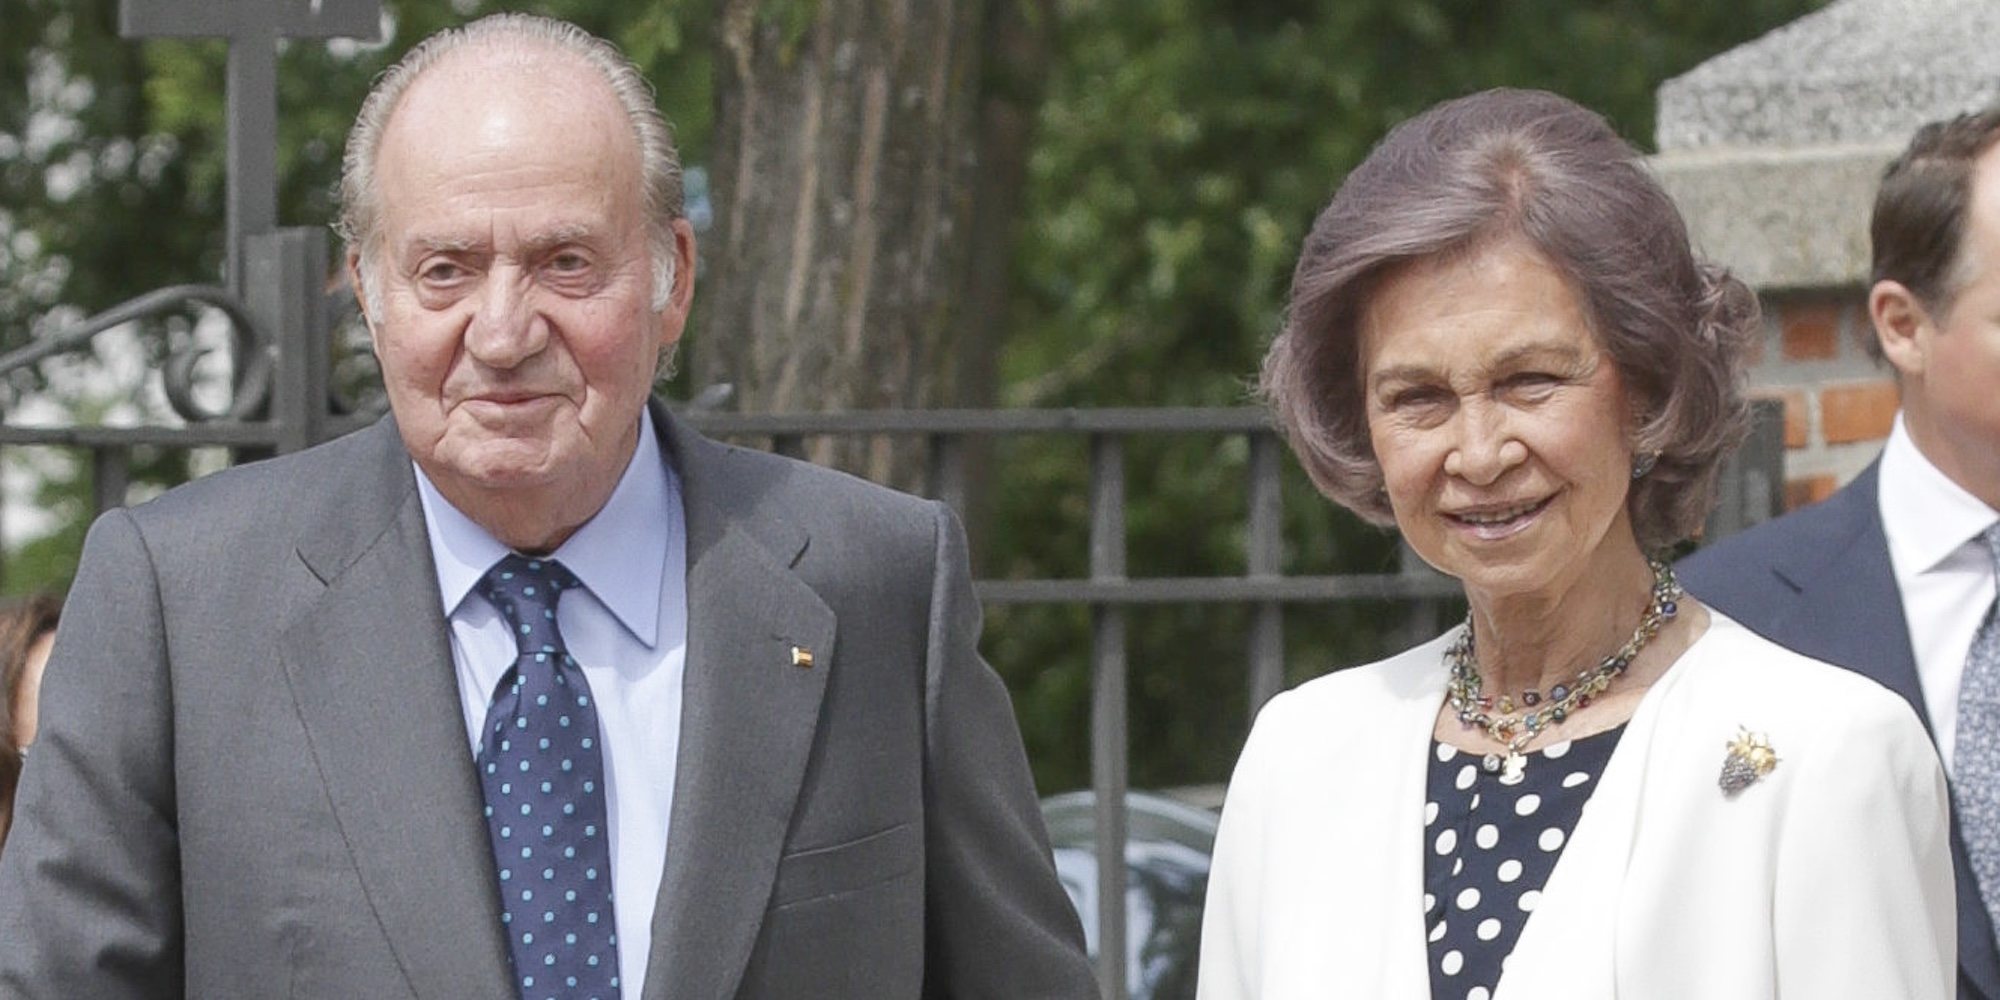 La Reina Sofía proclama su amor por el Rey Juan Carlos: "Estoy mejor que nunca con él"